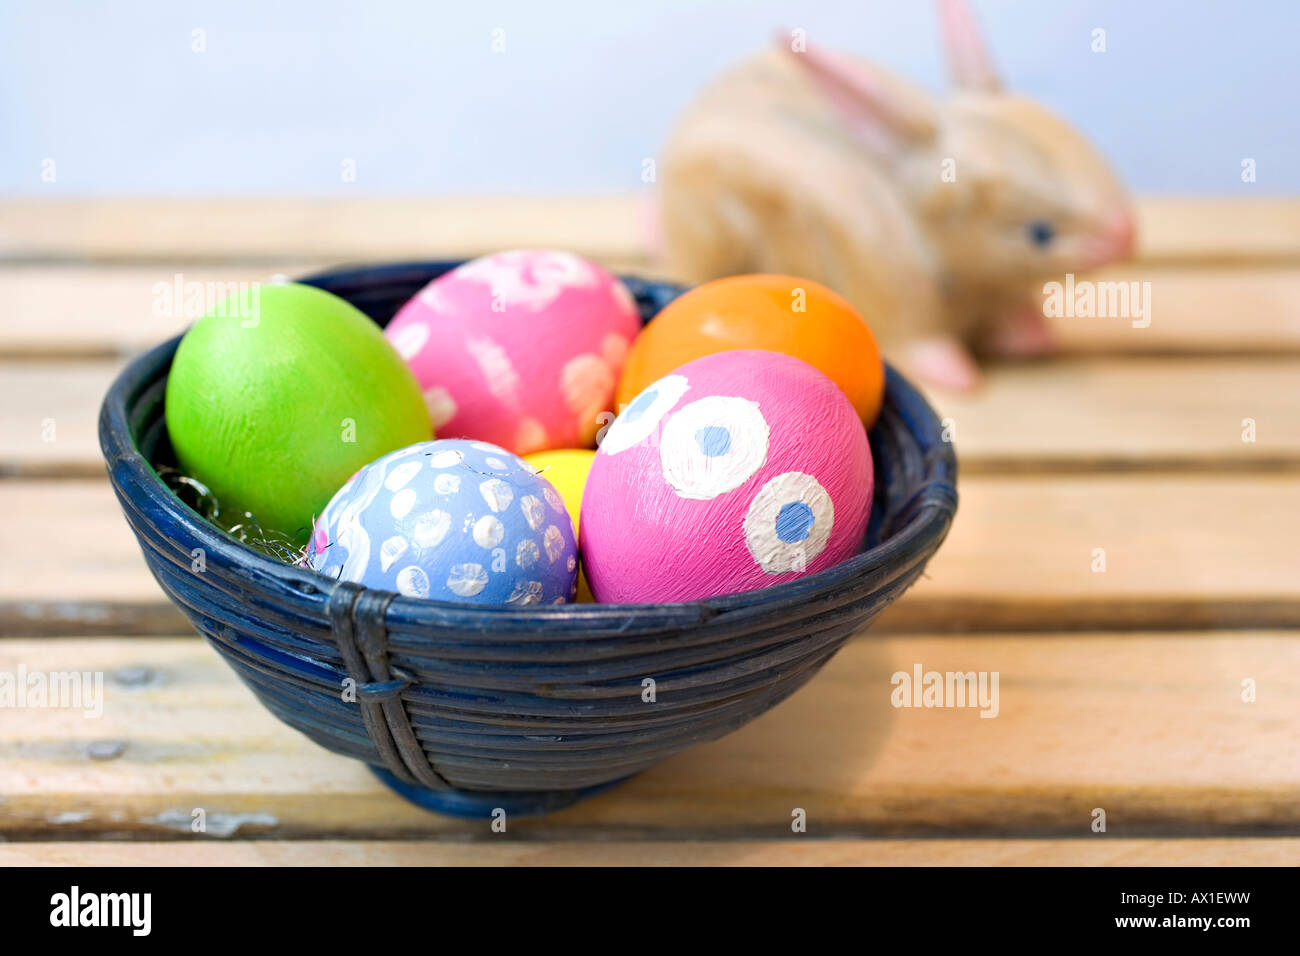 Los huevos de Pascua pintados a mano en un recipiente de madera de bambú azul junto al conejo de Pascua Foto de stock